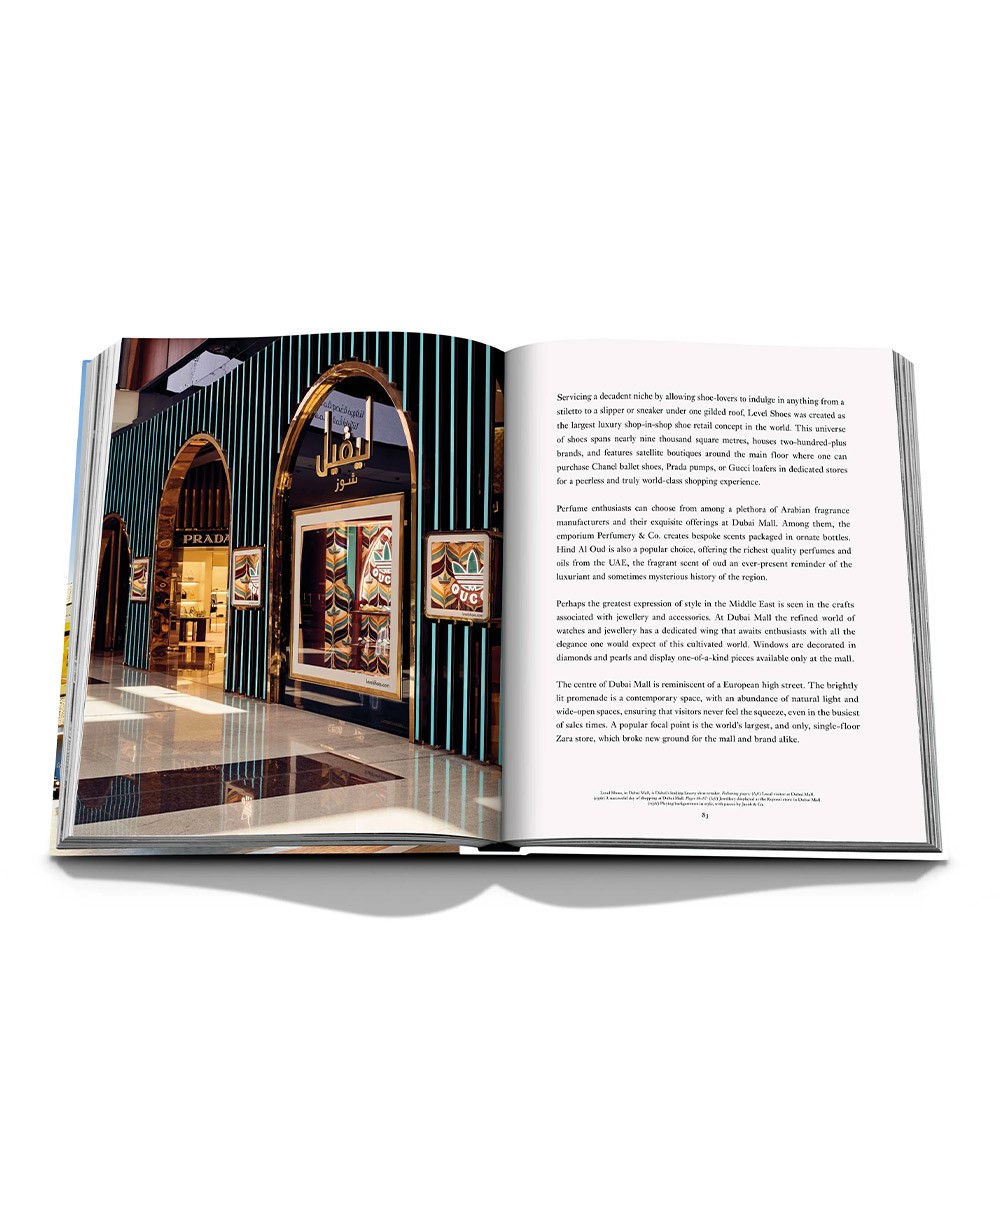 Aufgeschlagene Seite des Coffee Table Books „Dubai Mall“ von Assouline im RAUM concept store 